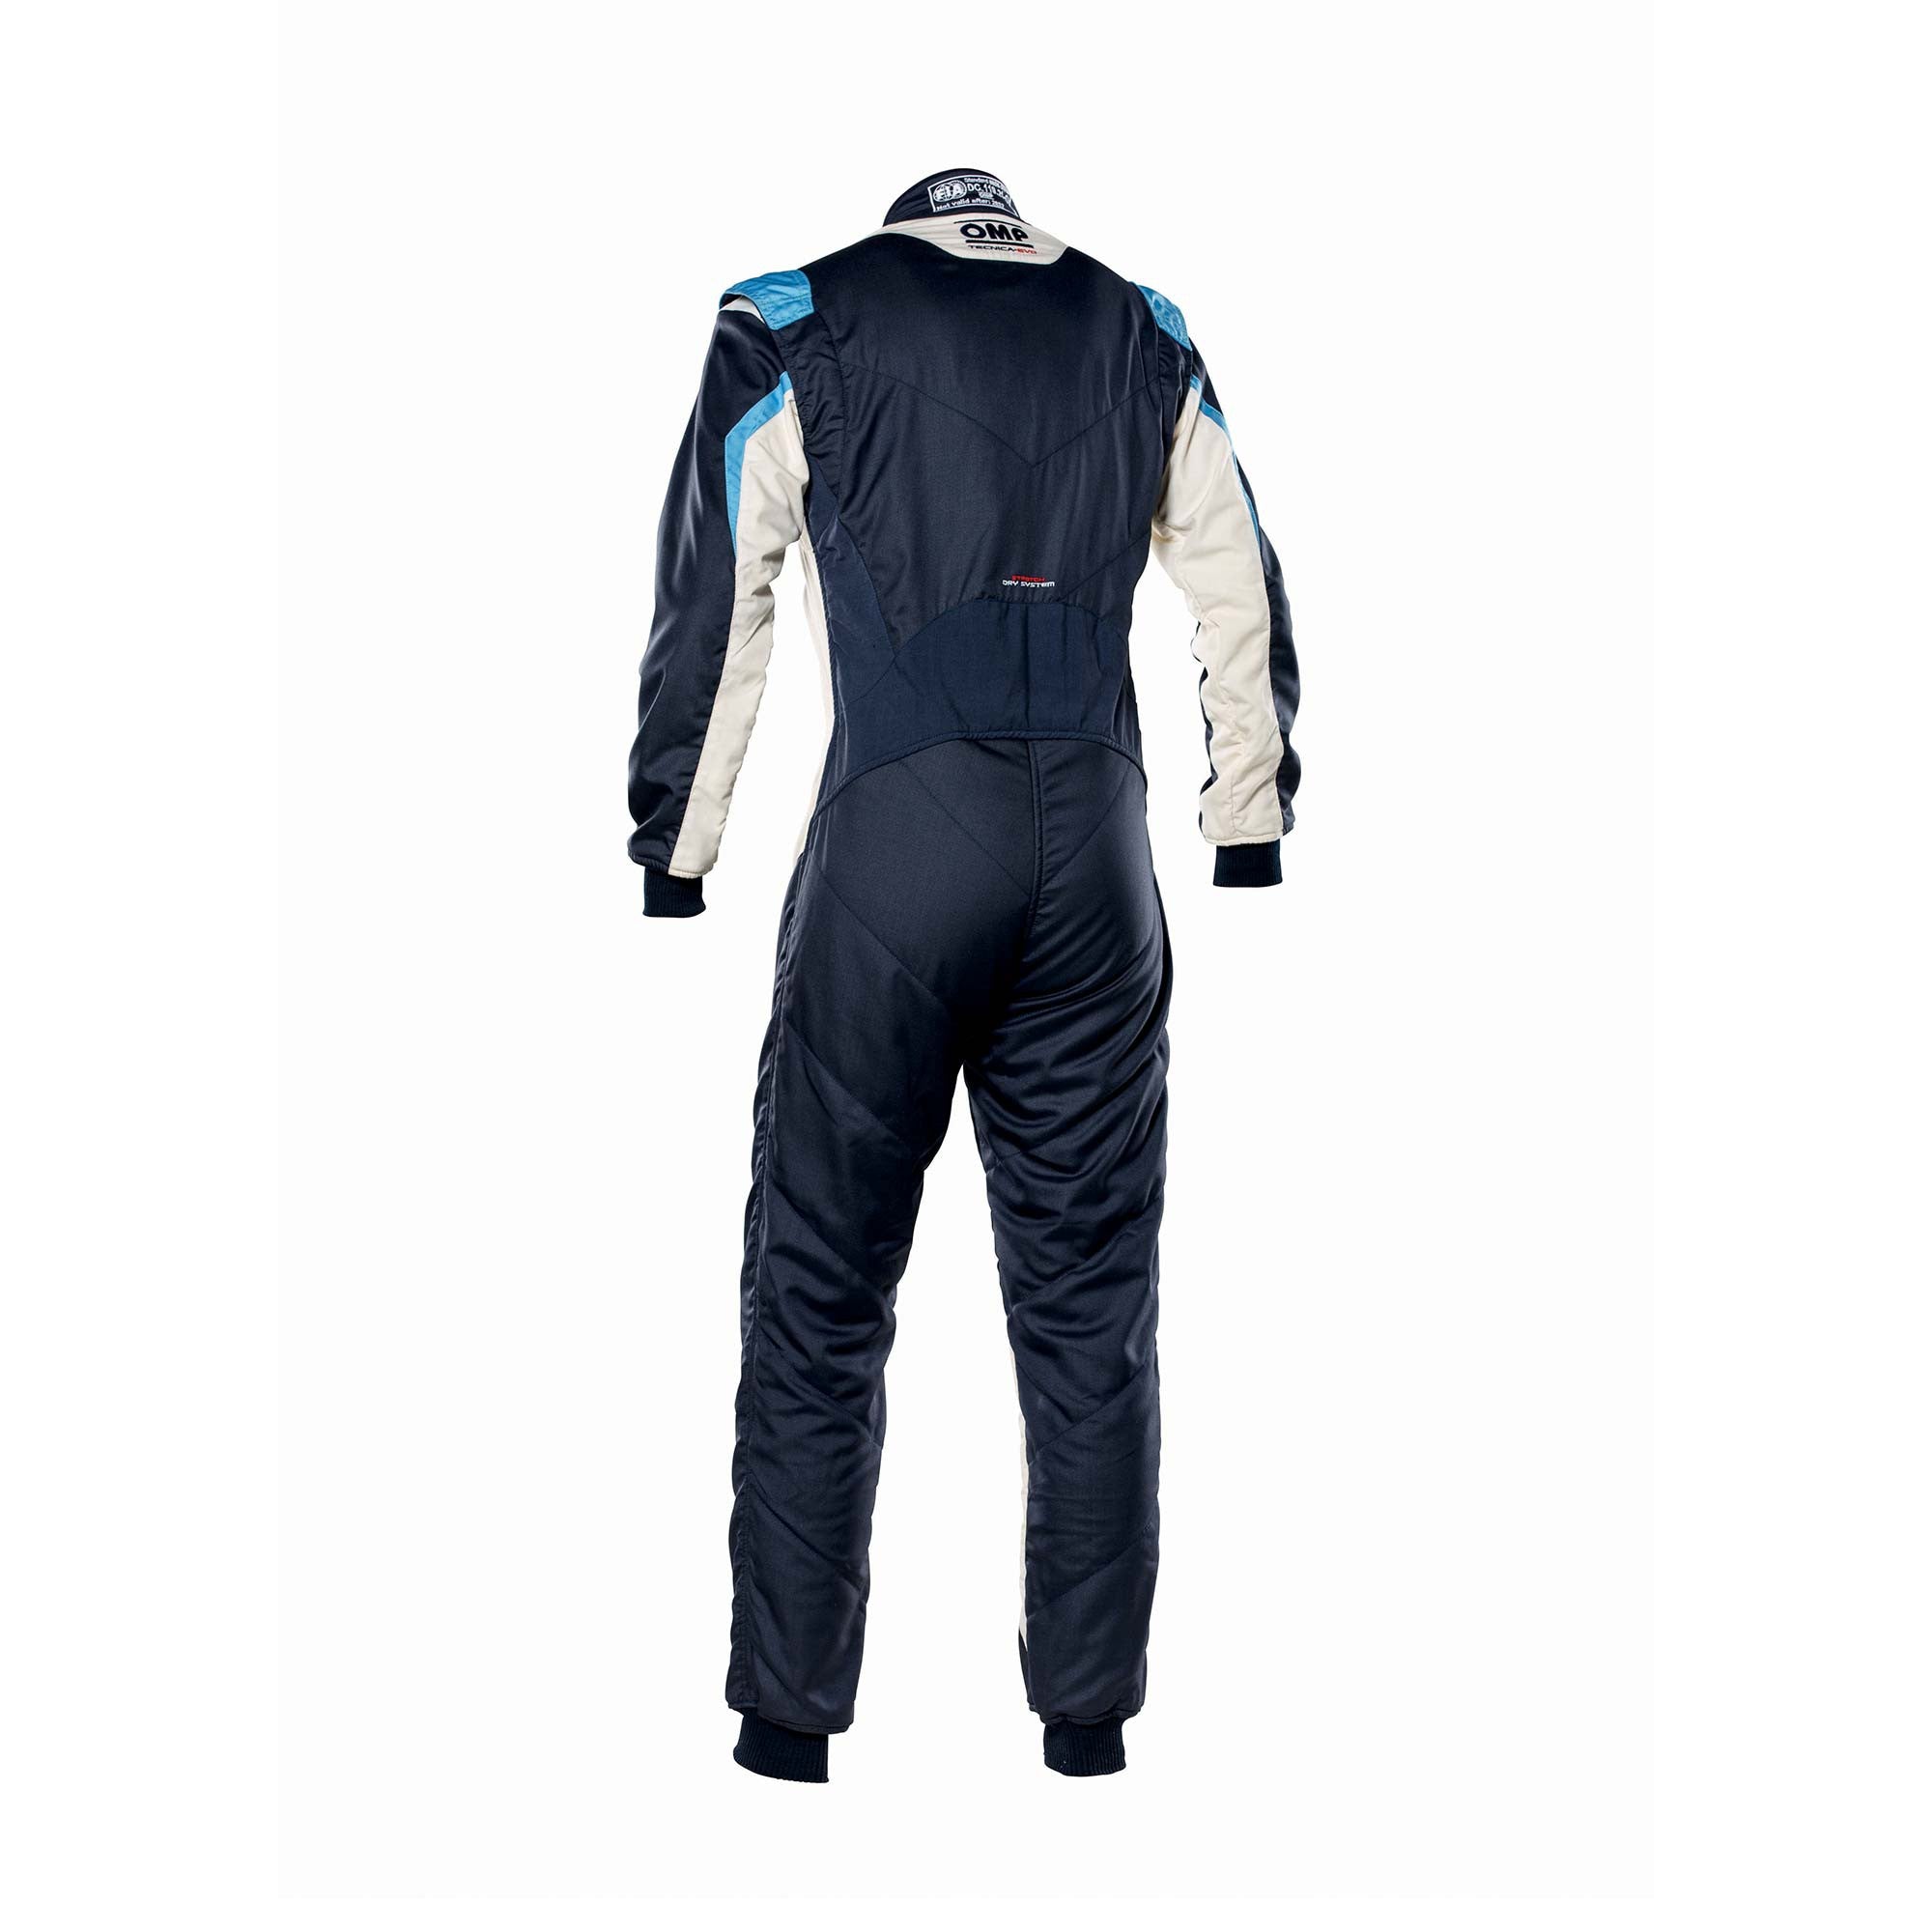 OMP IA0-1859-B01-246-64 Racing suit TECNICA EVO MY2021, FIA 8856-2018, navy blue/white/grey/cyan, size 64 Photo-1 